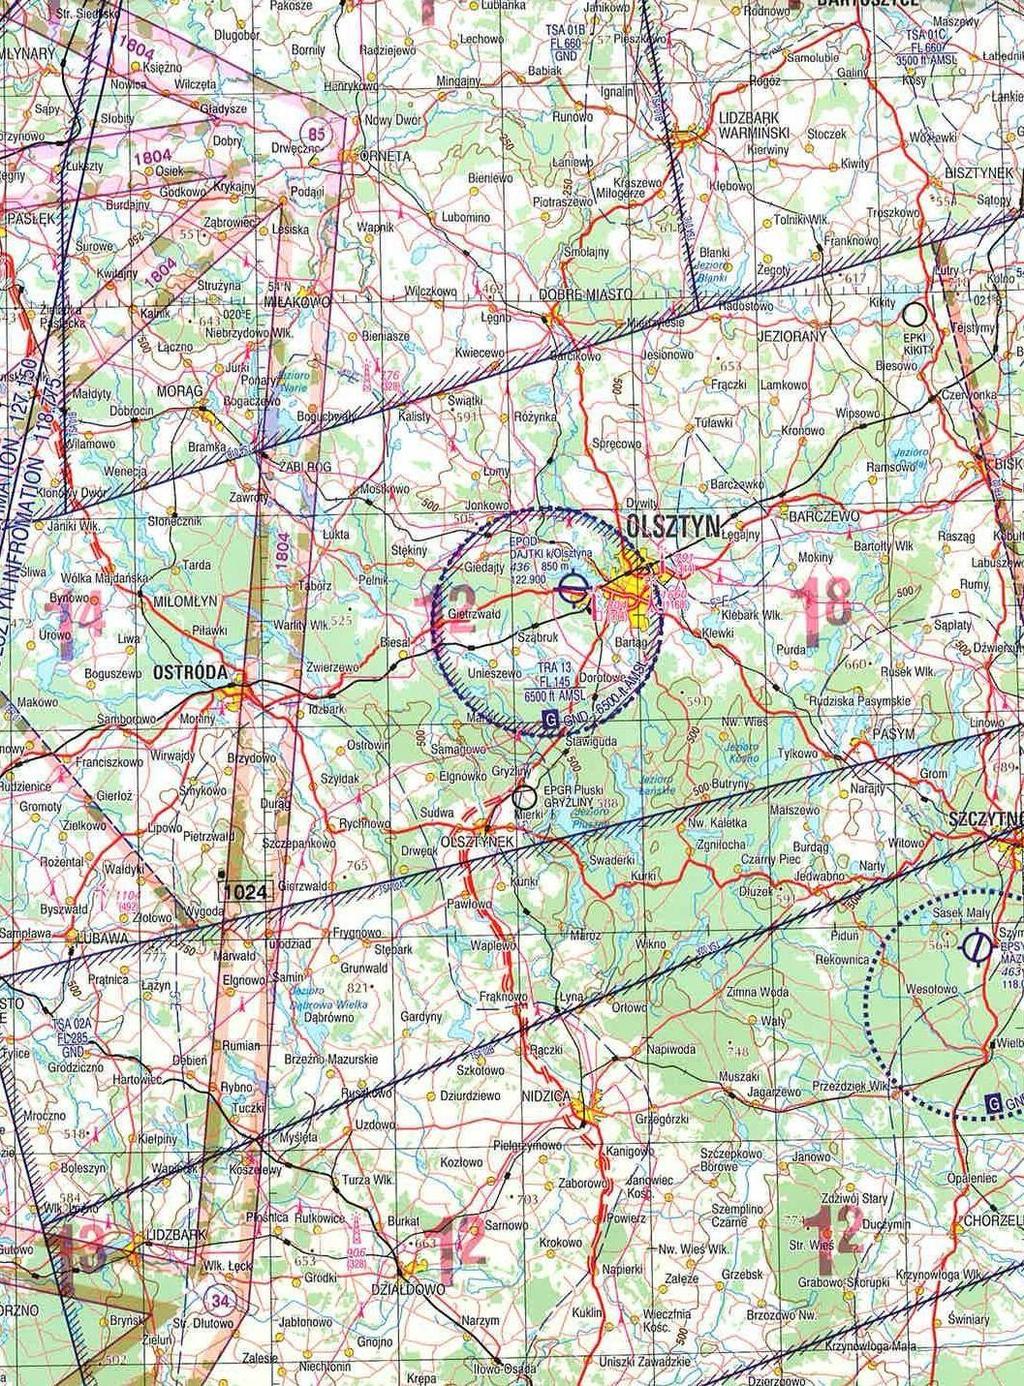 INSTRUKCJA OPERACYJNA LOTNISKA DAJTKI K/ OLSZTYNA - EPOD Mapa rejonu lotniska z naniesionymi